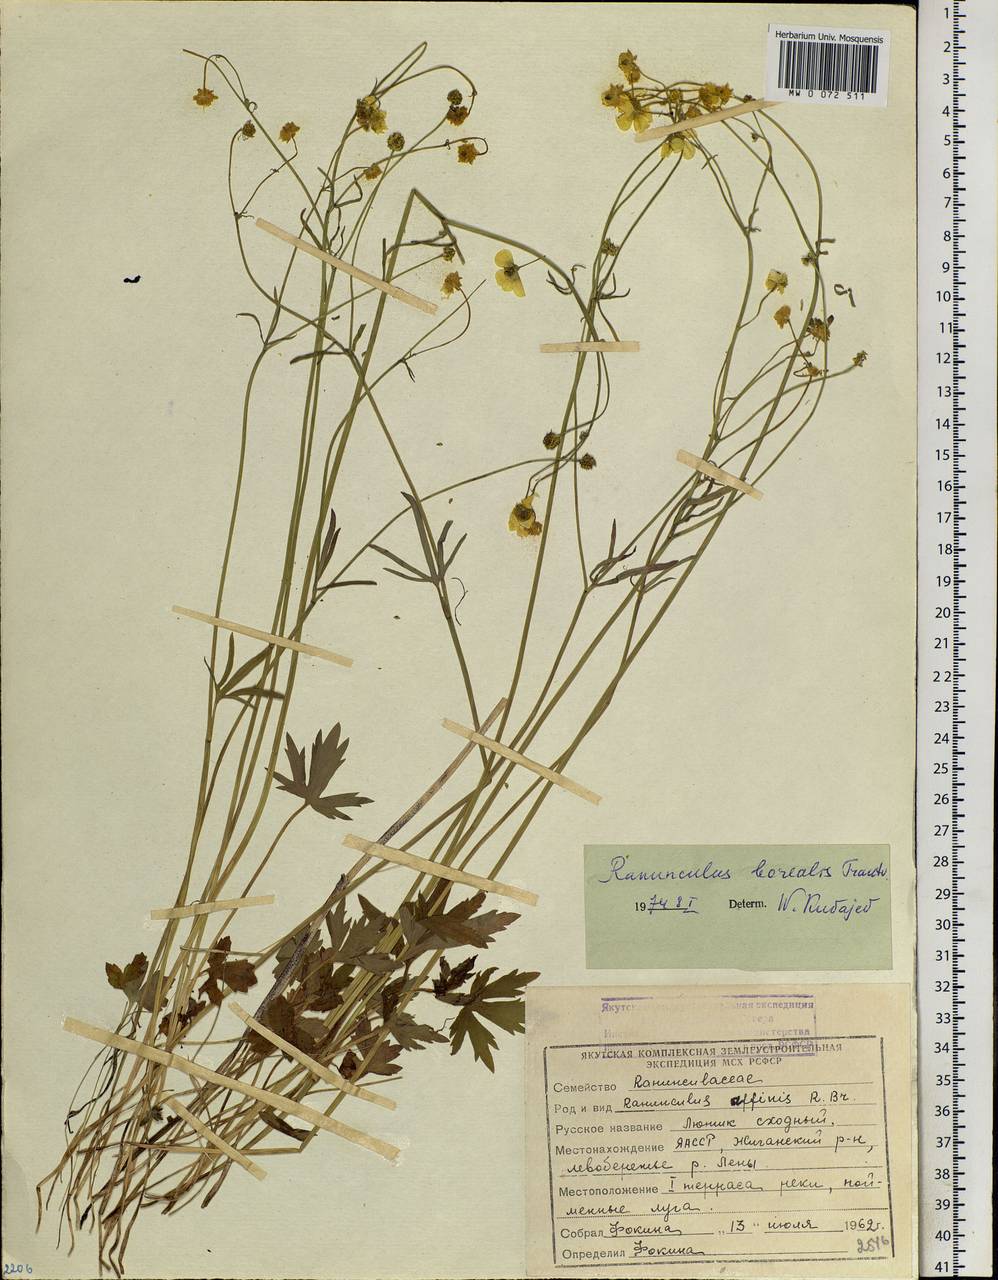 Ranunculus propinquus subsp. subborealis (Tzvelev) Kuvaev, Siberia, Yakutia (S5) (Russia)